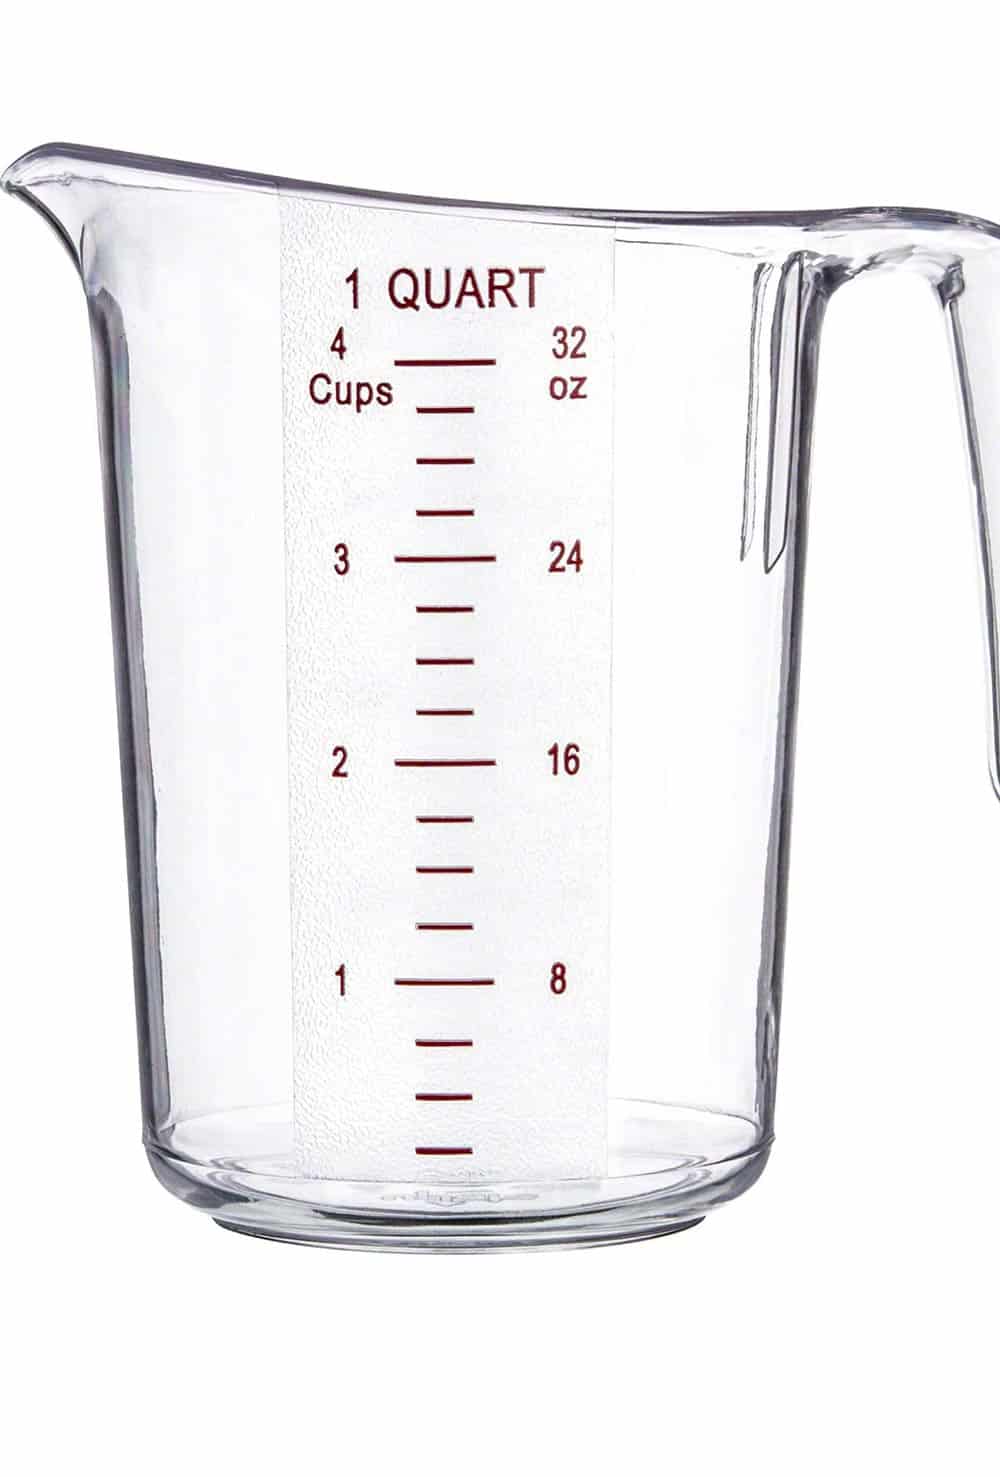 1 quart measuring cup